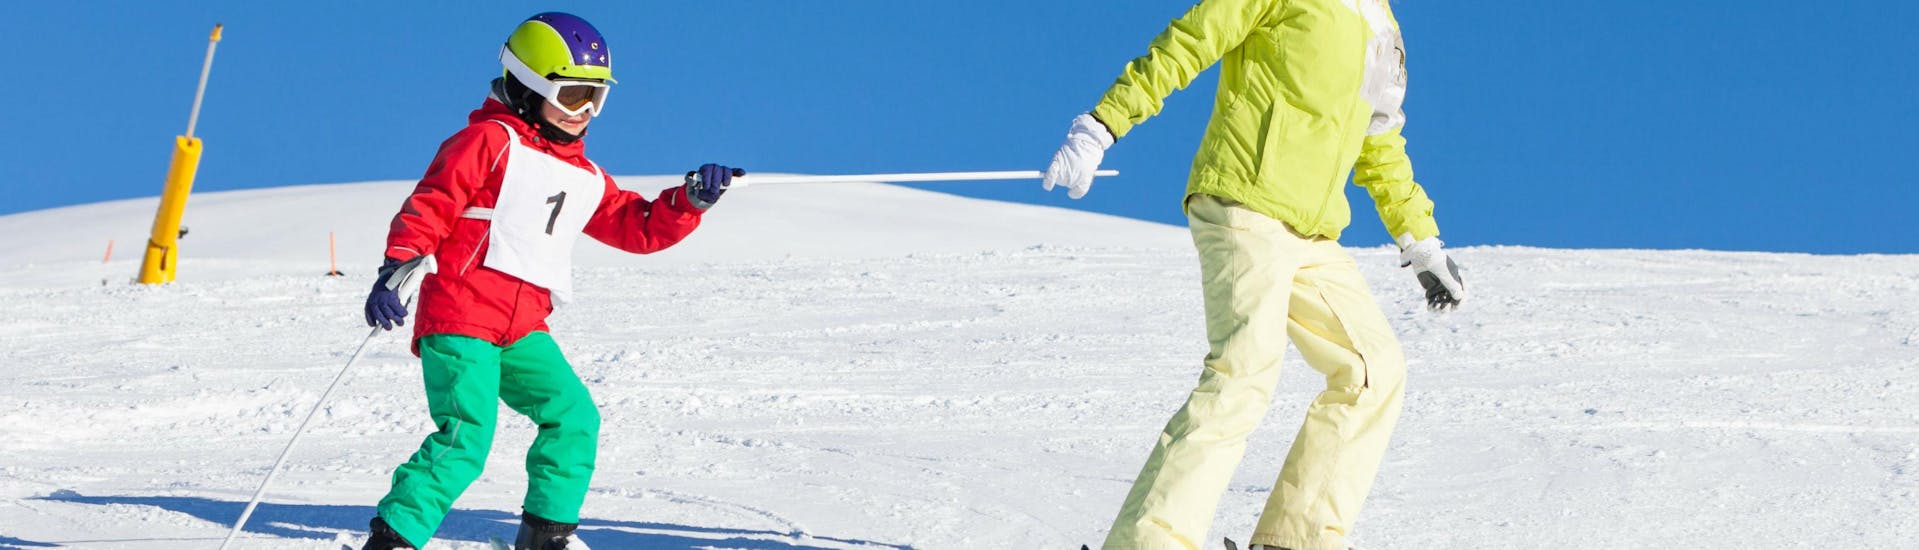 Un ragazzino che impara il suo primo trick sulla neve durante la lezione di sci per bambini della Scuola di Sci Pontedilegno.